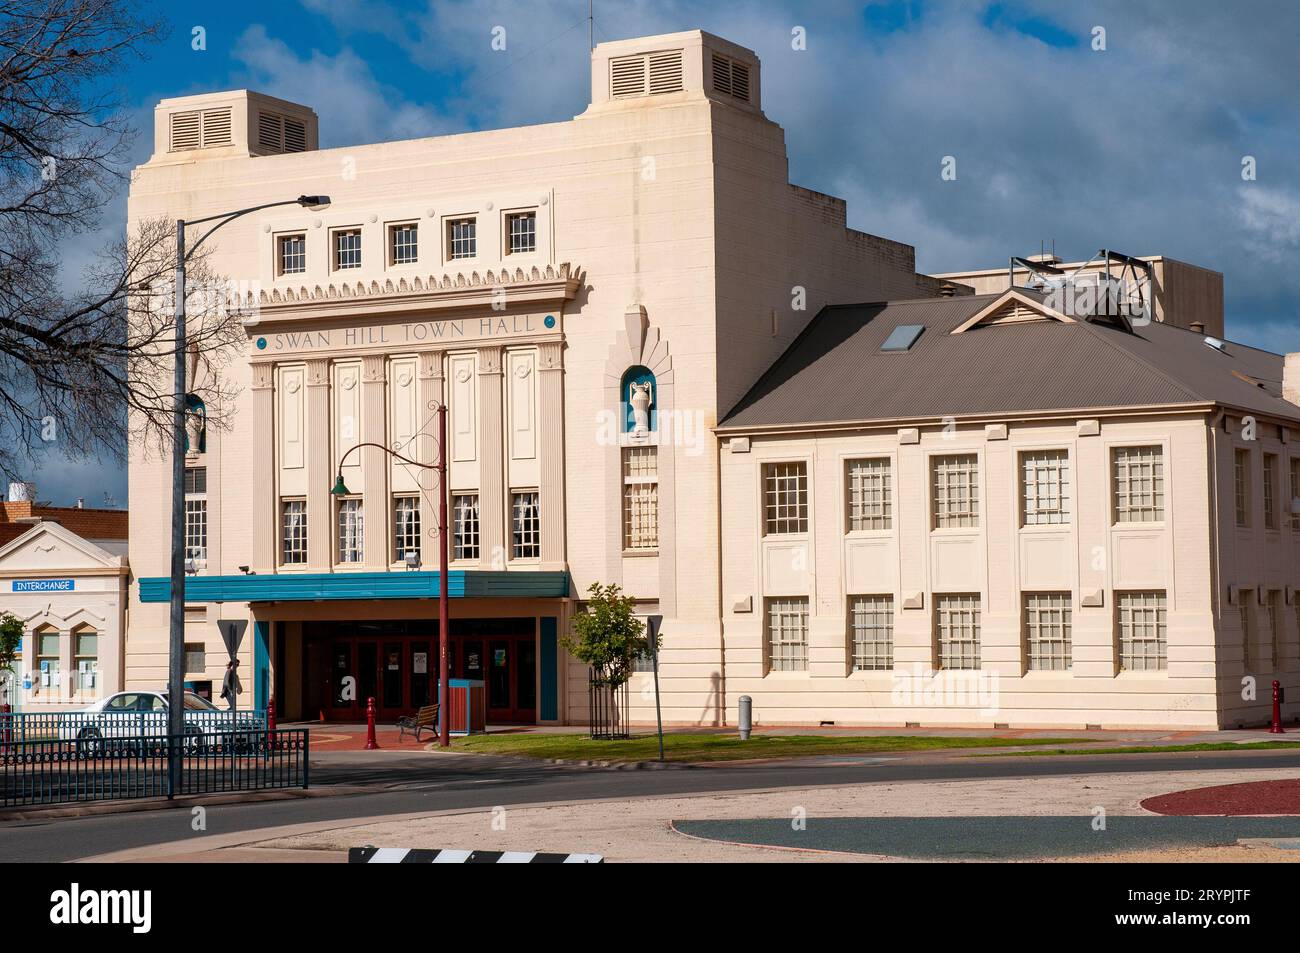 La facciata del bellissimo municipio di Swan Hill in stile art deco. Il Swan Hill Town Hall Performing Arts and Conference Centre è uno spazio per spettacoli in stile art deco elegantemente restaurato costruito nel 1935 Foto Stock